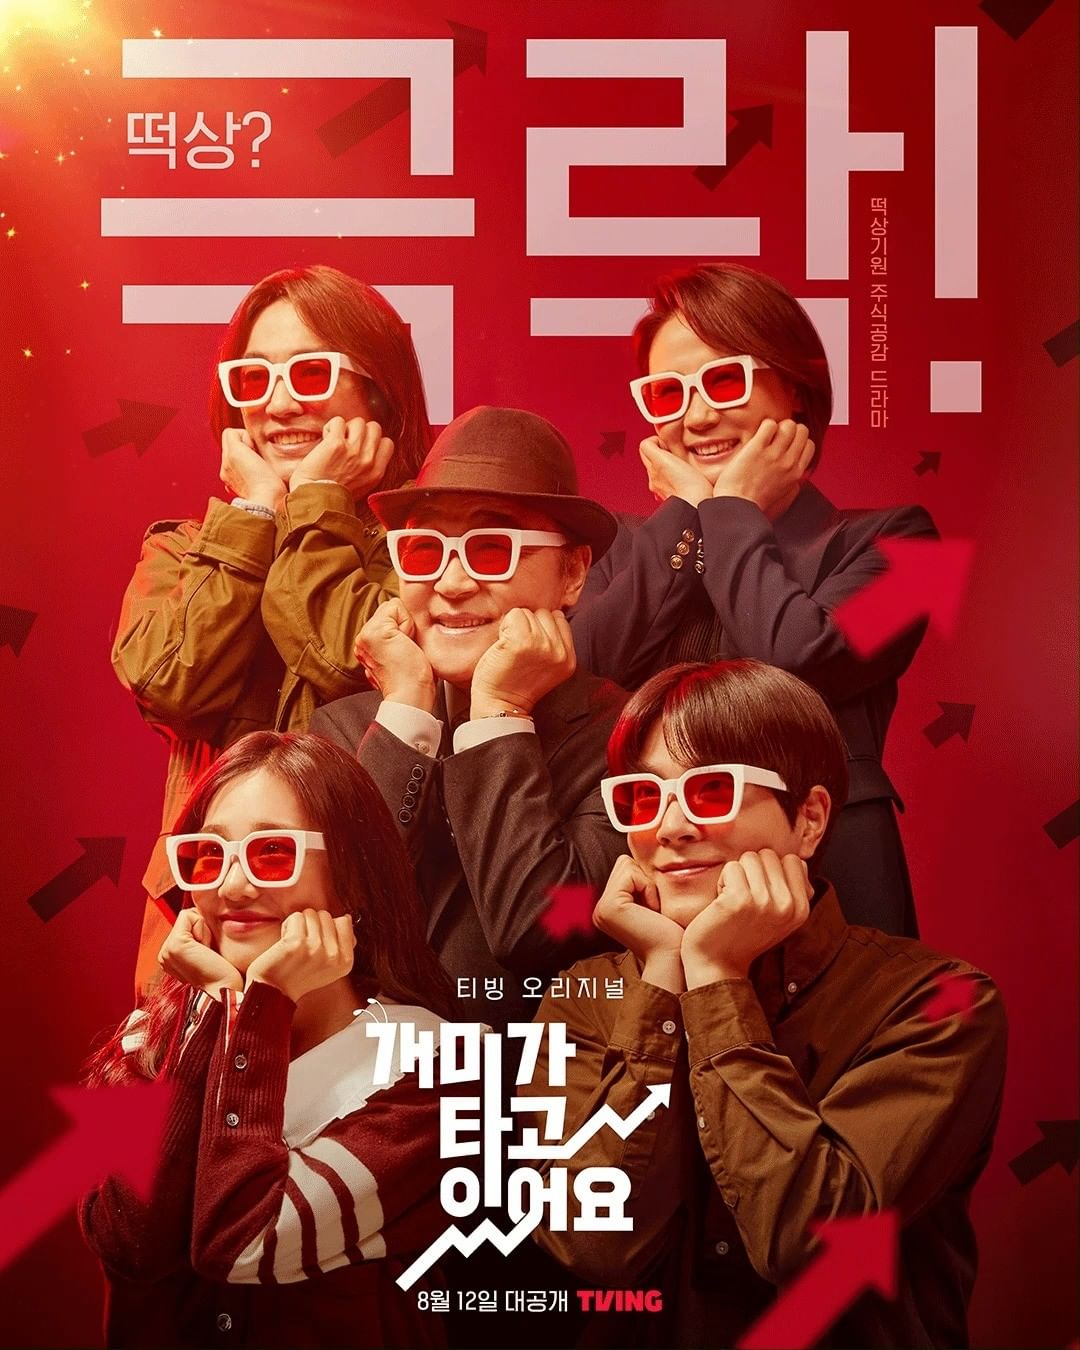 K-drama releasing in August: Stock Struck